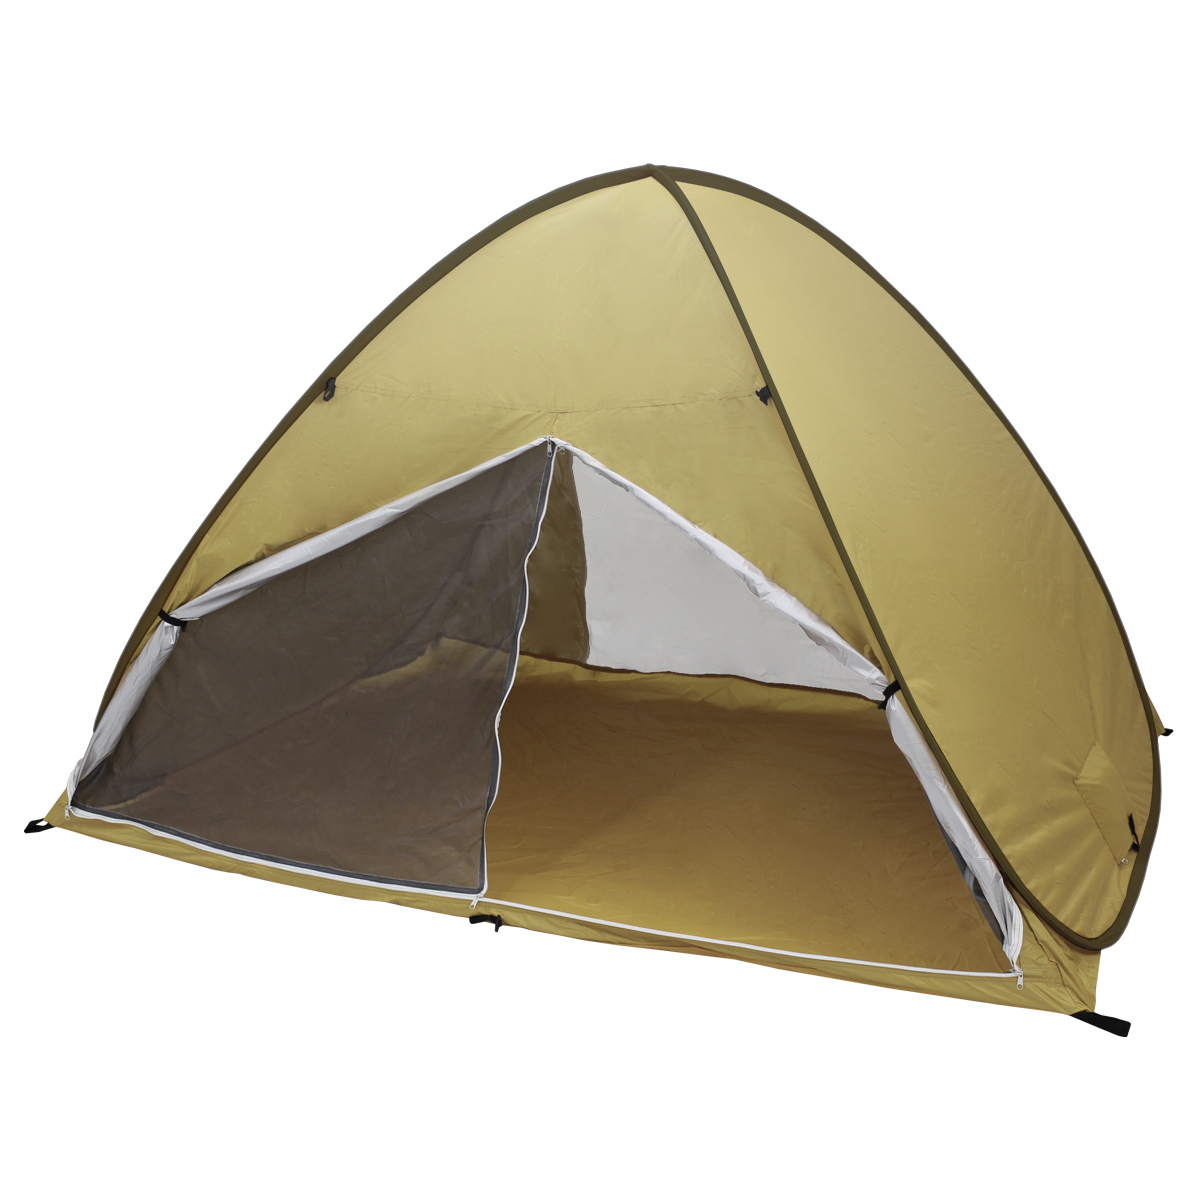 テント サンシェードテント ワンタッチテント 2人用 3人用 簡単 ポップアップ UVカット 収納袋付き ペグ付き 海 デイキャンプ 紫外線防止  キャンプ ソロキャンプ